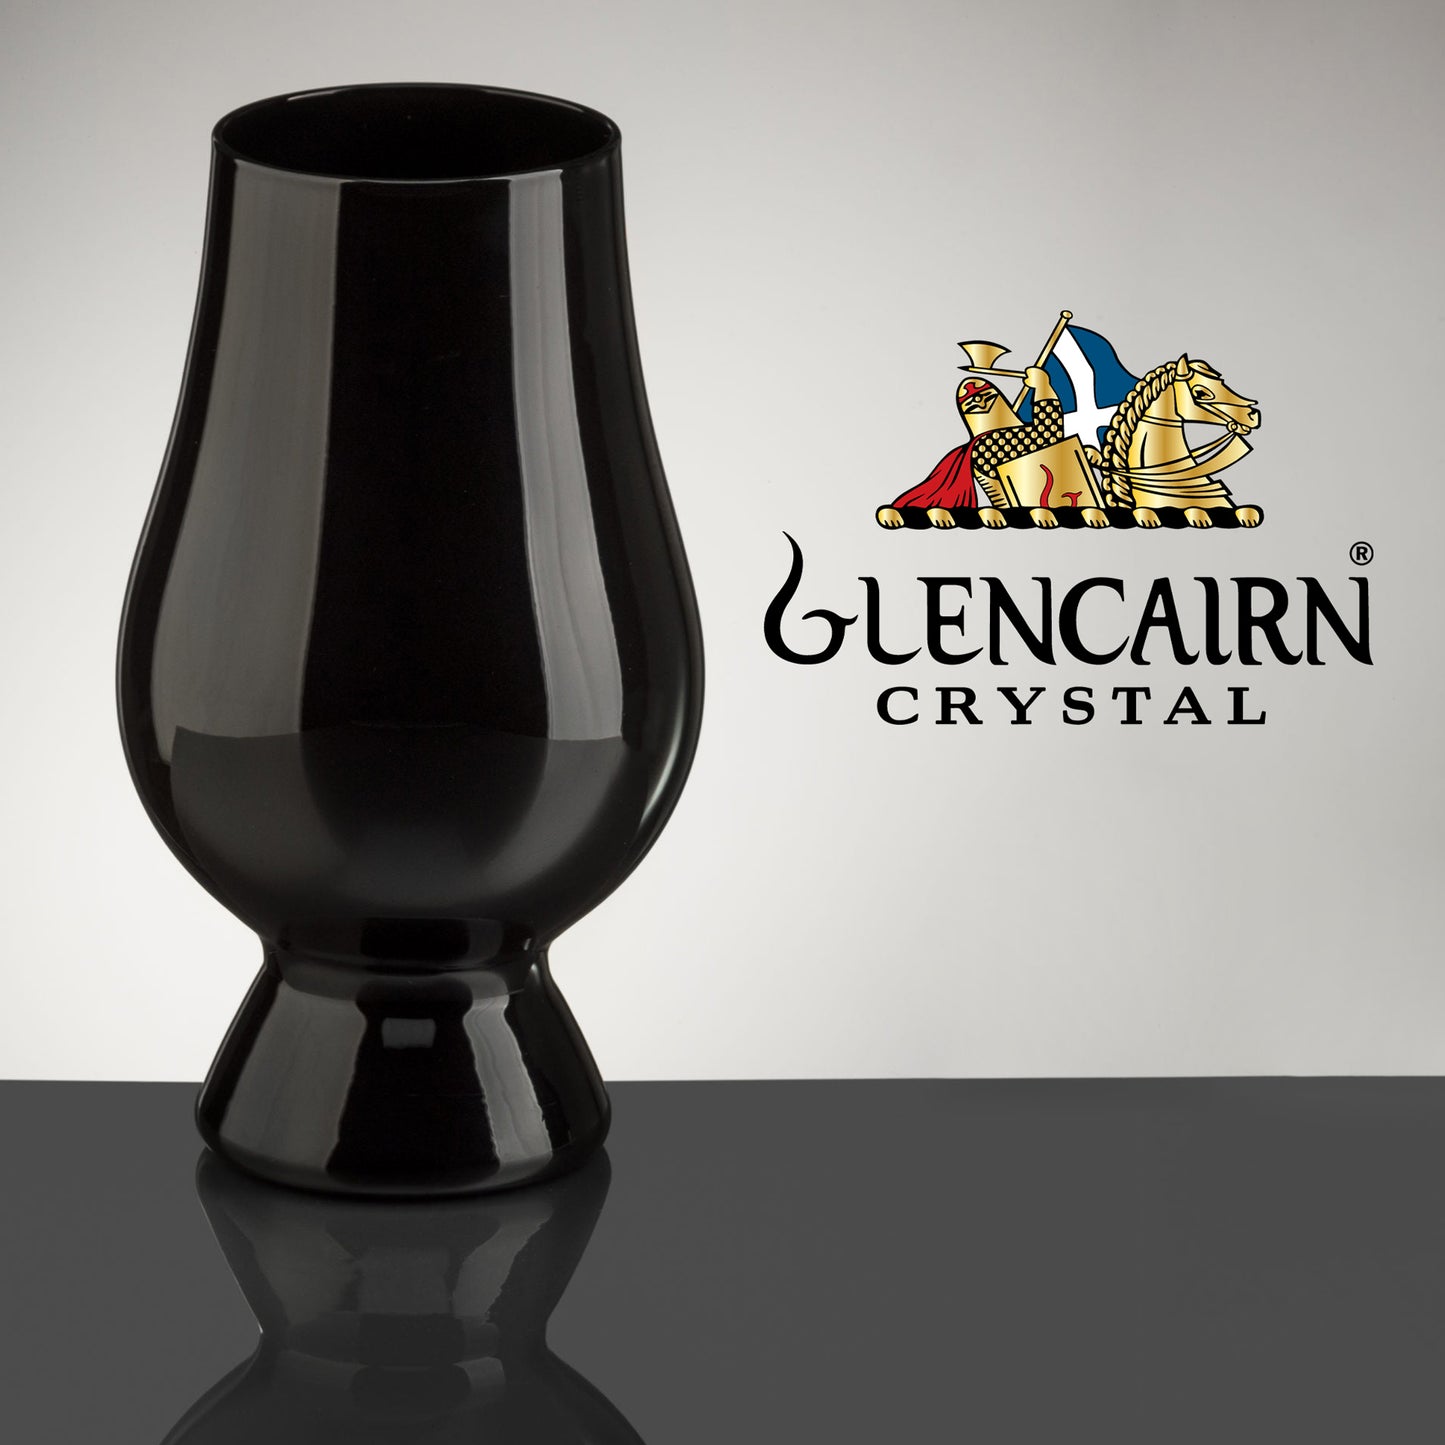 The Black Glencairn Whisky Glass, Official Blind Tasting Crystal Whiskey Glassware